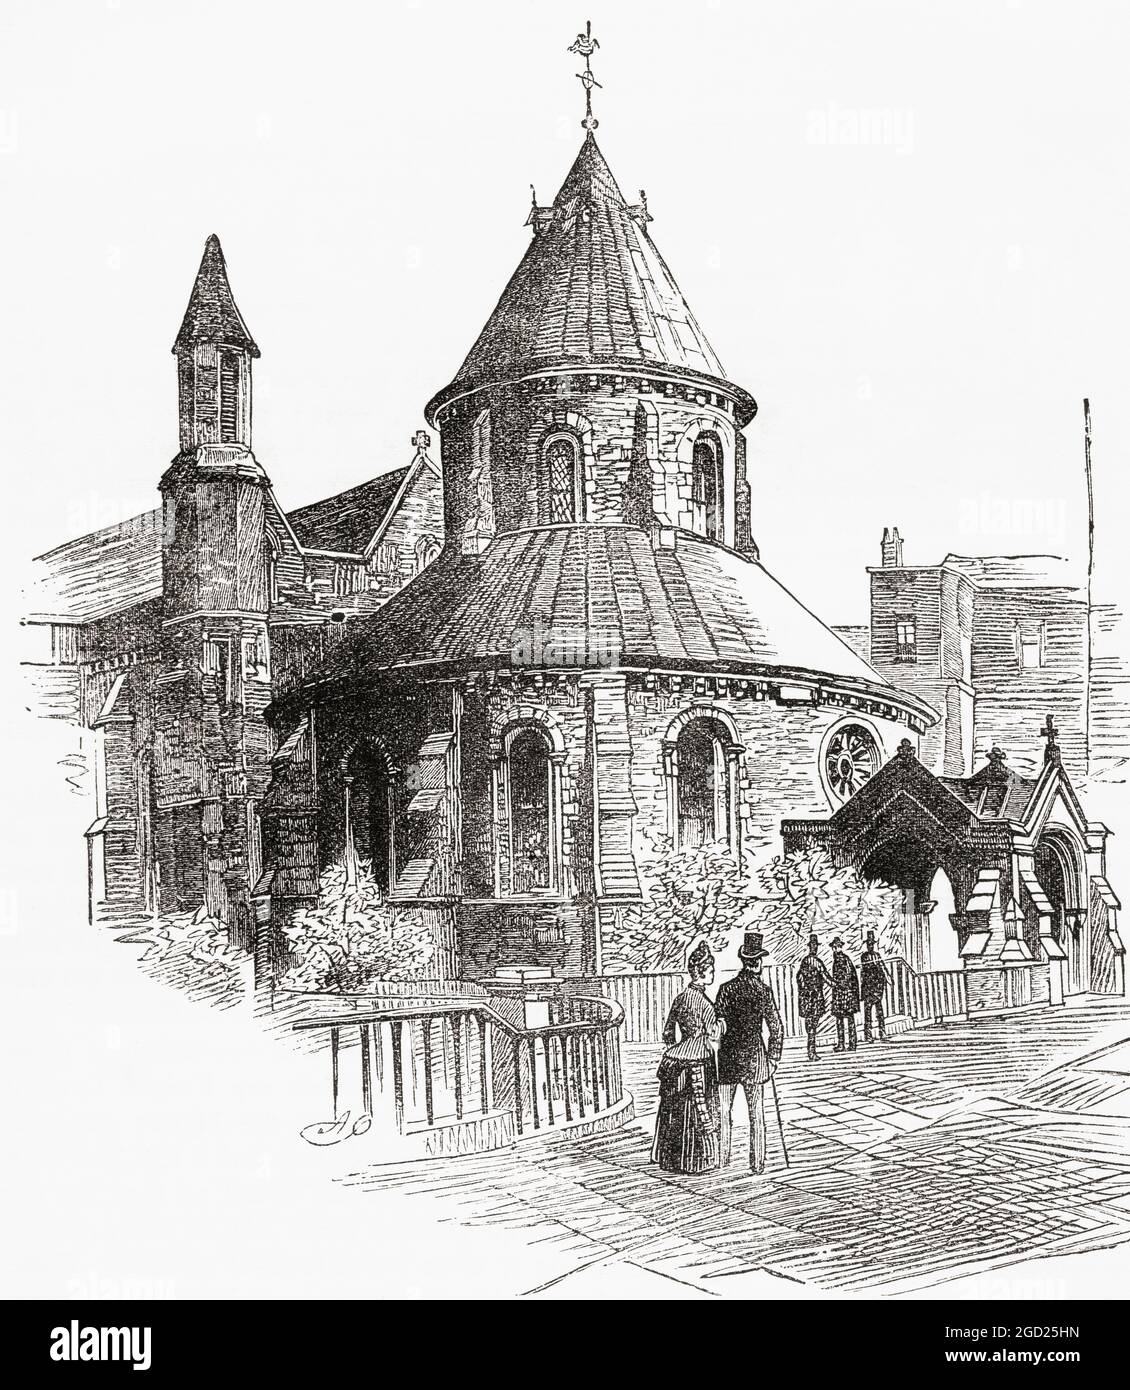 The Temple Church, Londres, Angleterre, vu ici au XIXe siècle. L'église a été construite par les Templiers comme leur quartier général anglais. De la pittoresque Angleterre, ses monuments et ses Hausts historiques, publié en 1891. Banque D'Images